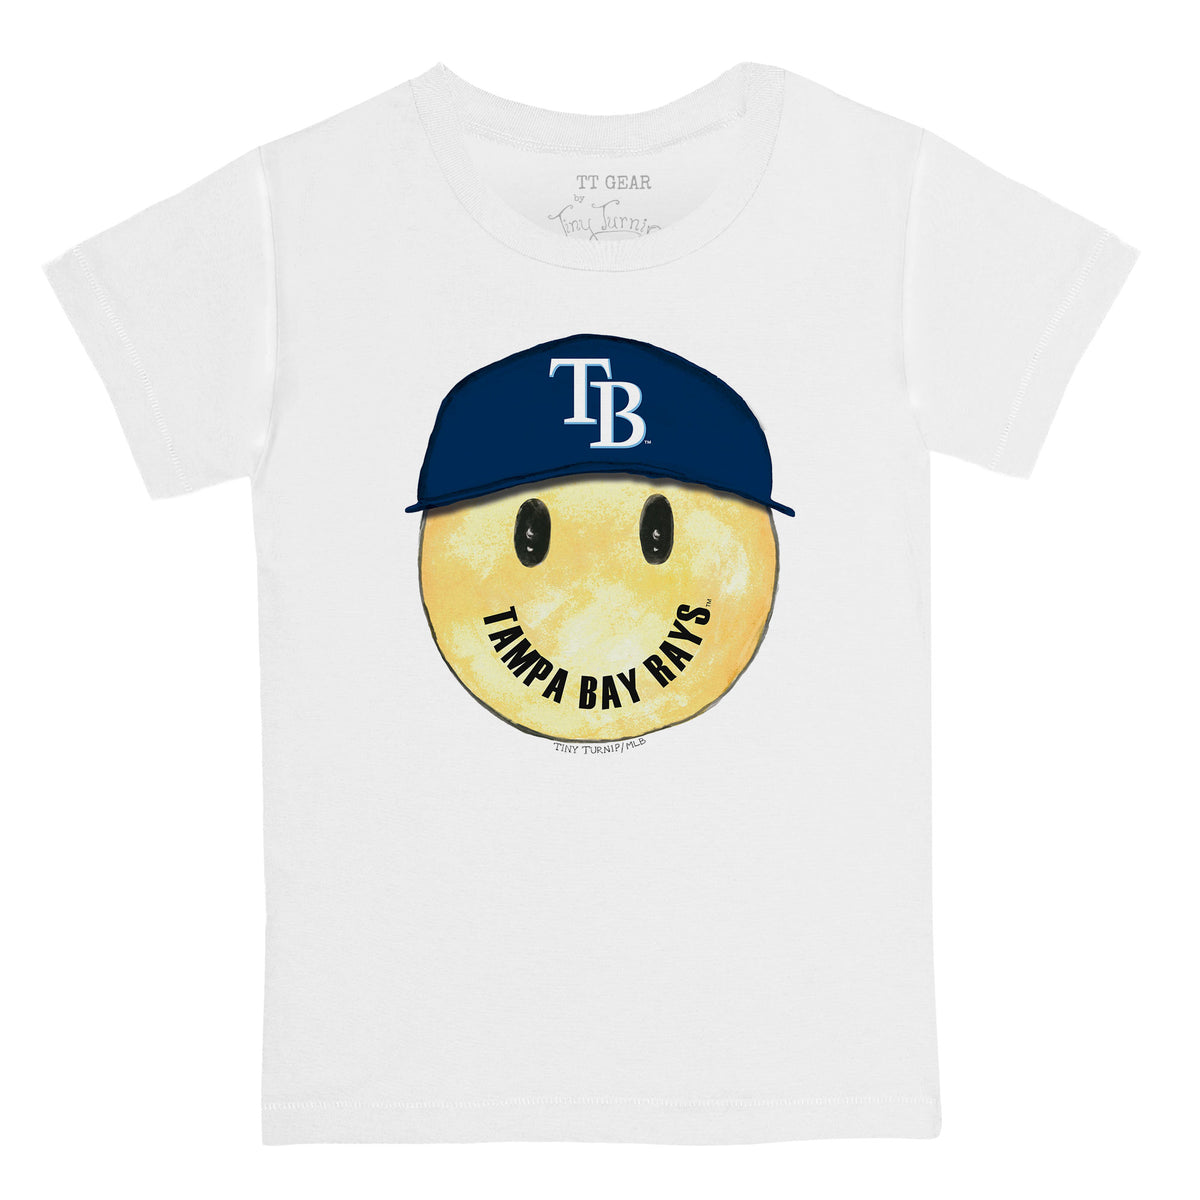 Tampa Bay Rays Smiley Tee Shirt